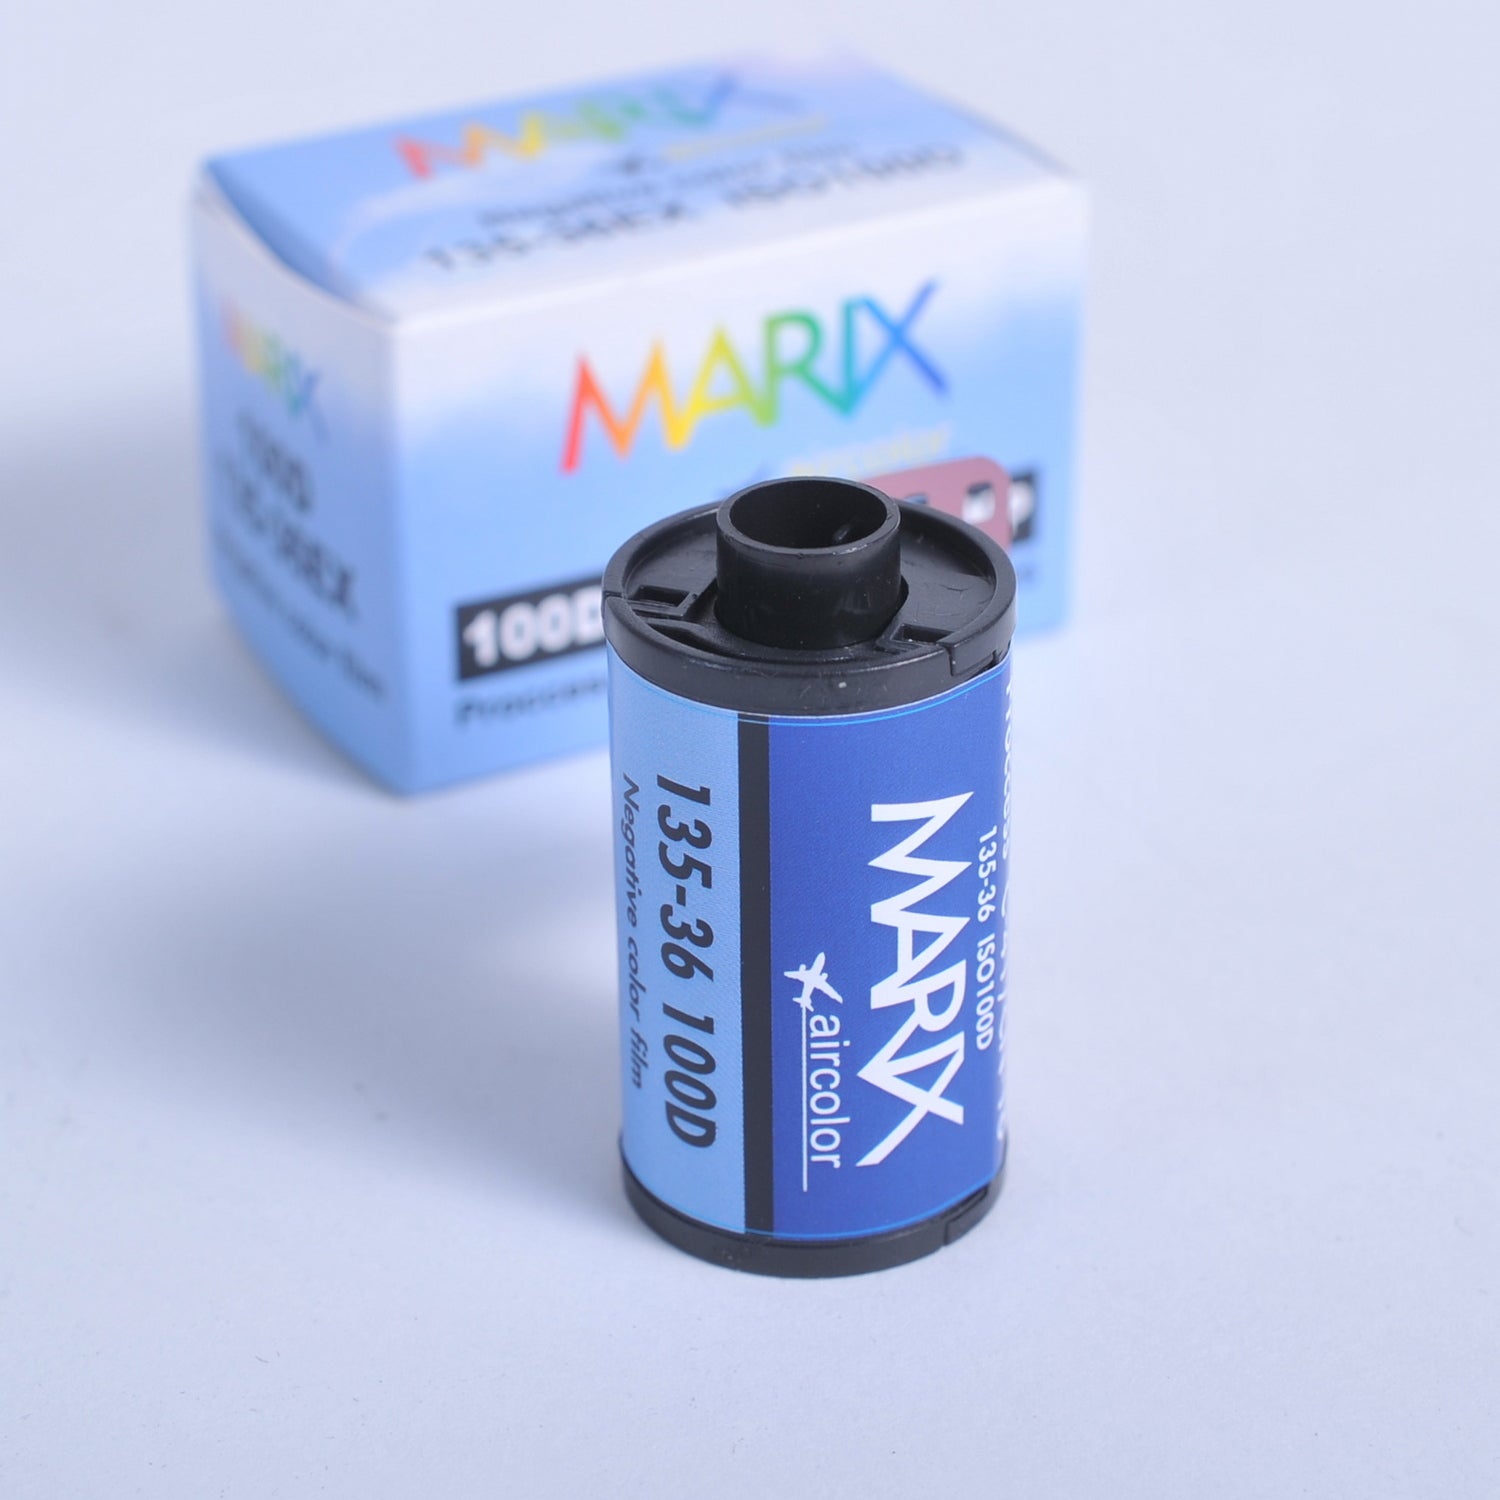 MARIX マリックス カラー ネガフィルム 100D 36枚 5個セット